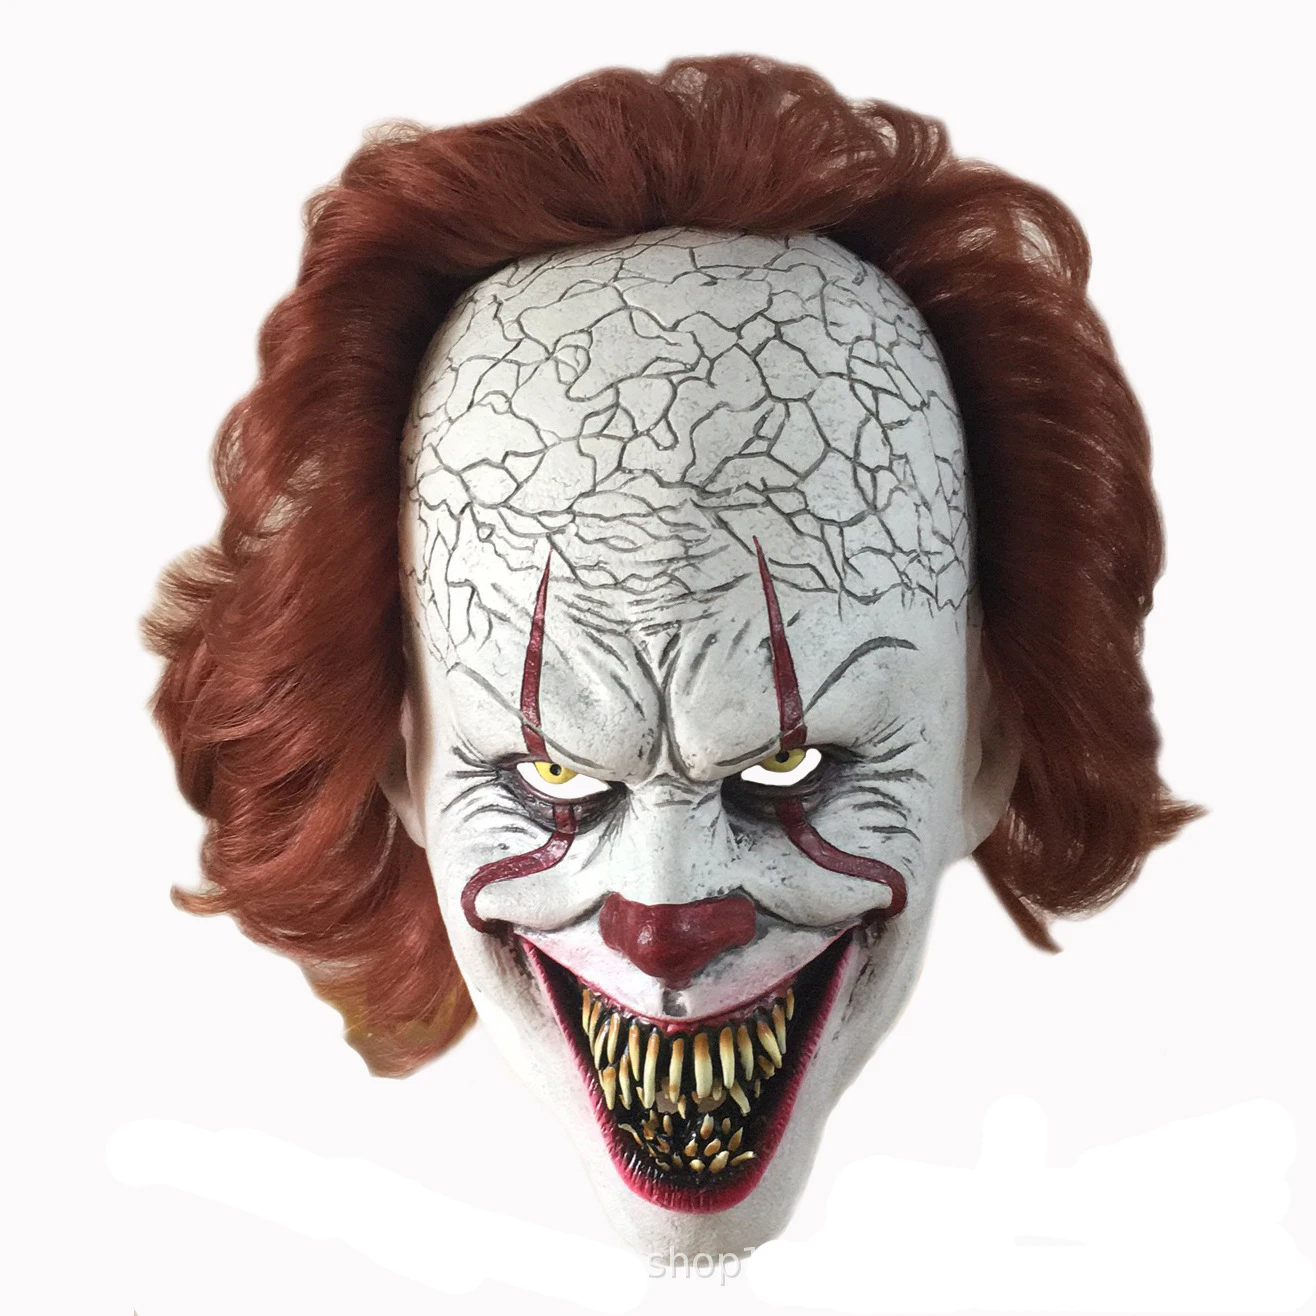 

Маска на Хэллоуин жуткий страх клоун на все лицо из фильма ужасов костюм Джокера для вечерние ринки фестиваля косплея реквизит украшение на...